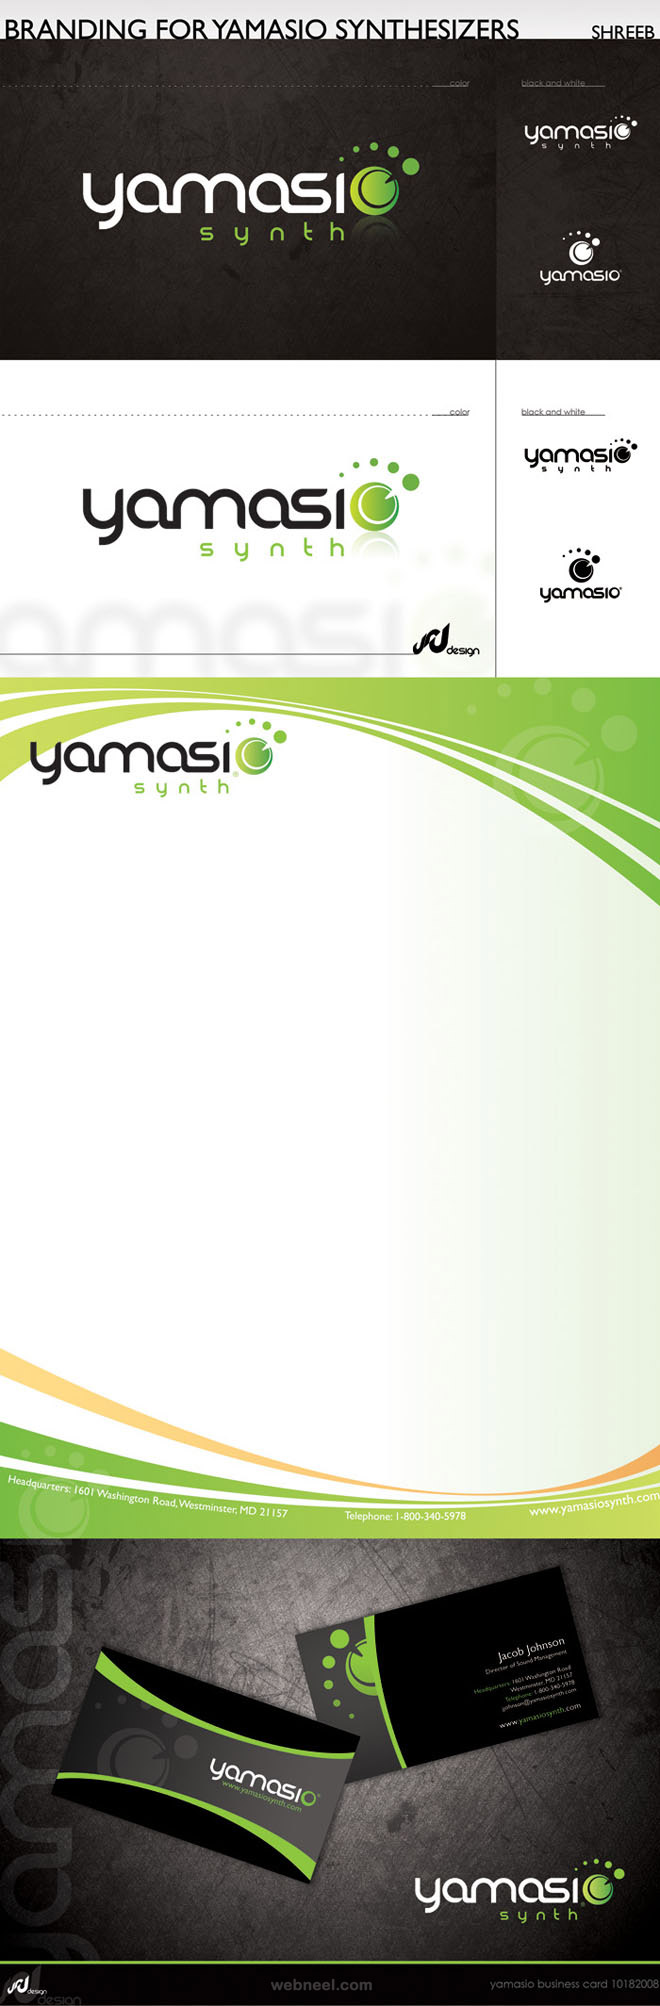 yamasio branding identity design